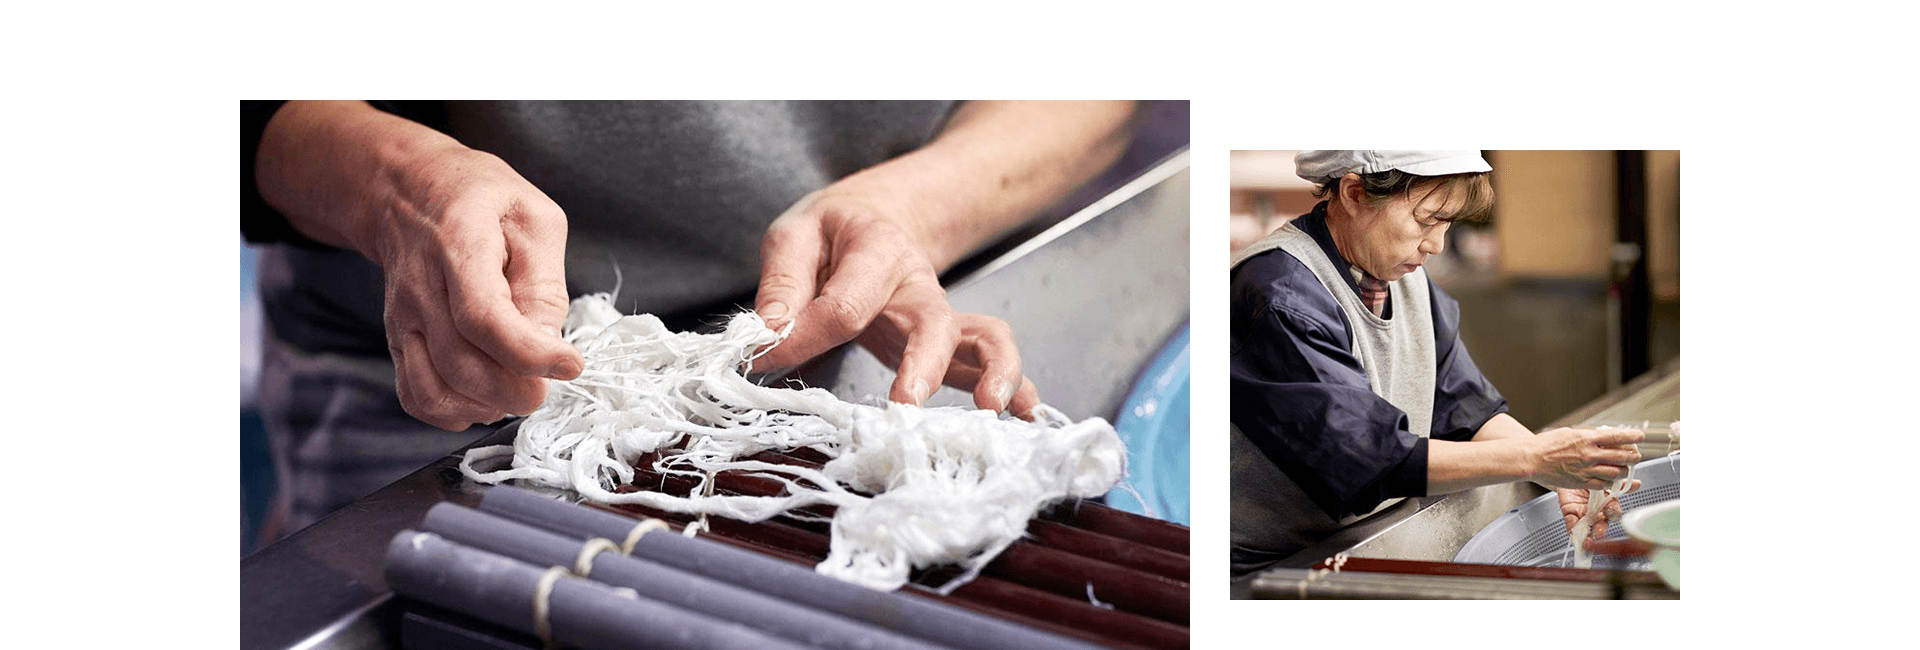 ほんの数名の職人によって作られる本物の和紙は強靭で耐久性が高く、 壊れずふやけないという魅力的な特徴を備えている